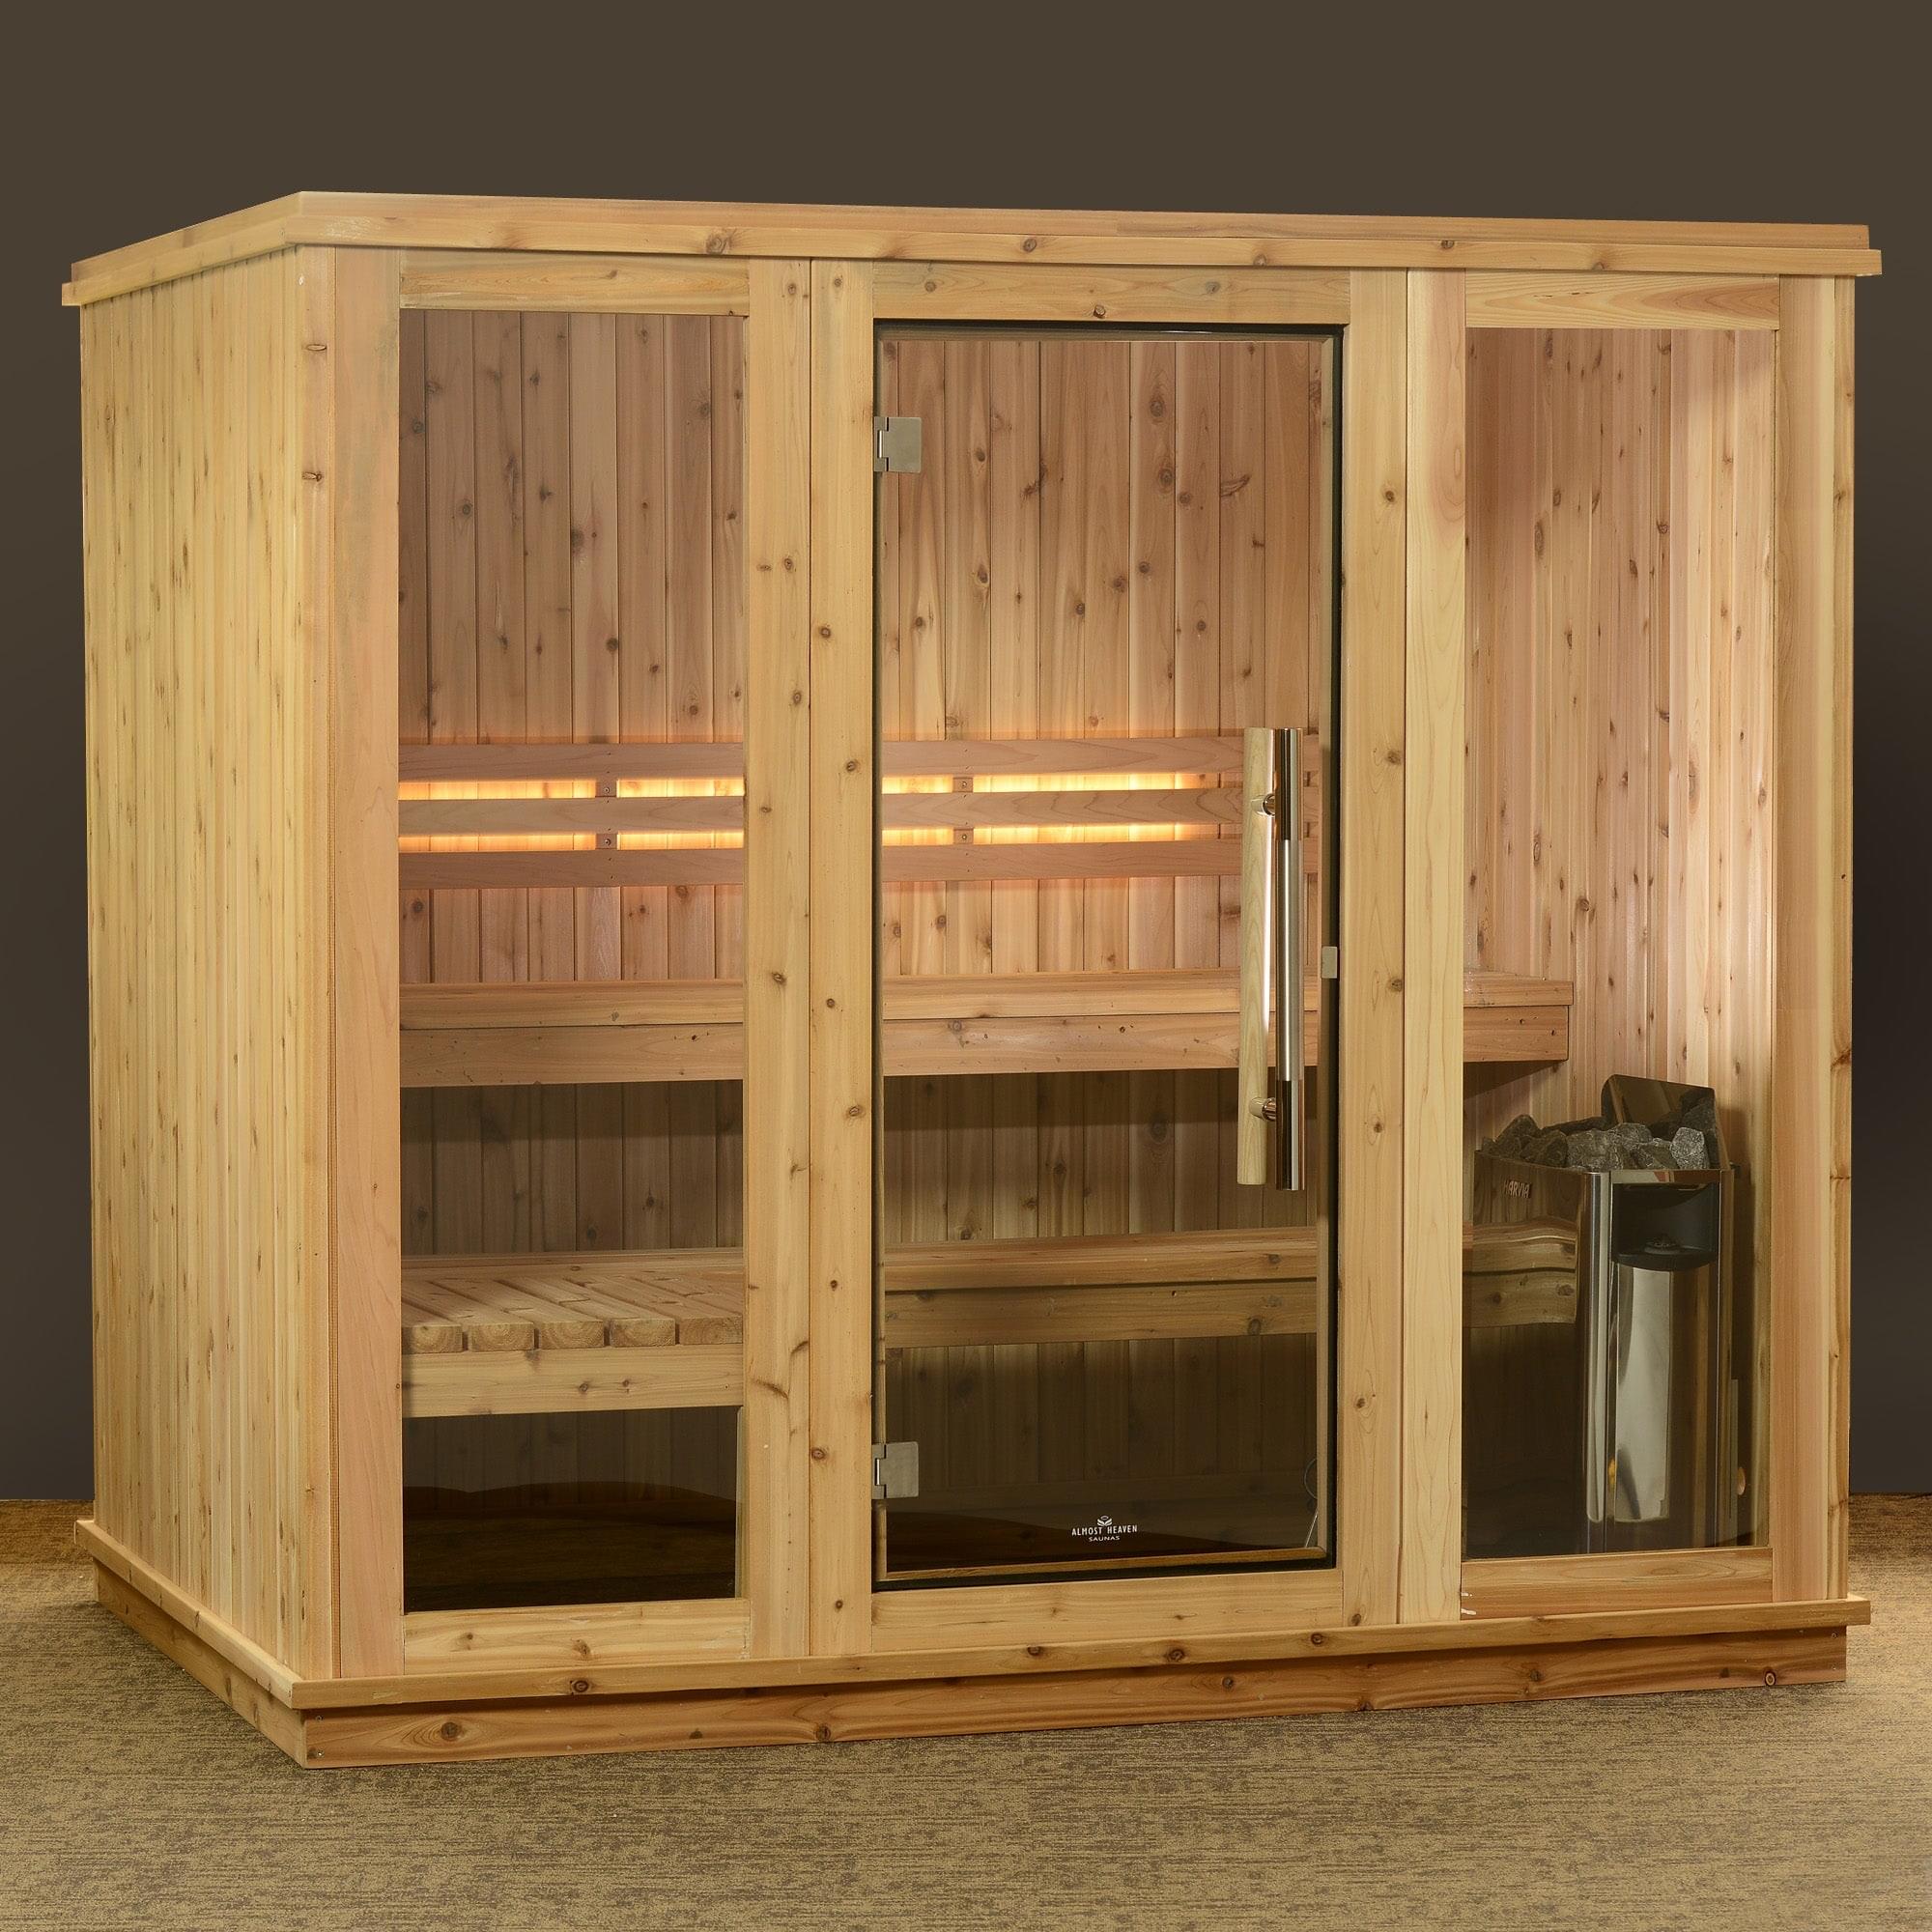 Almost Heaven Bridgeport 6-Person Customizable Indoor Sauna